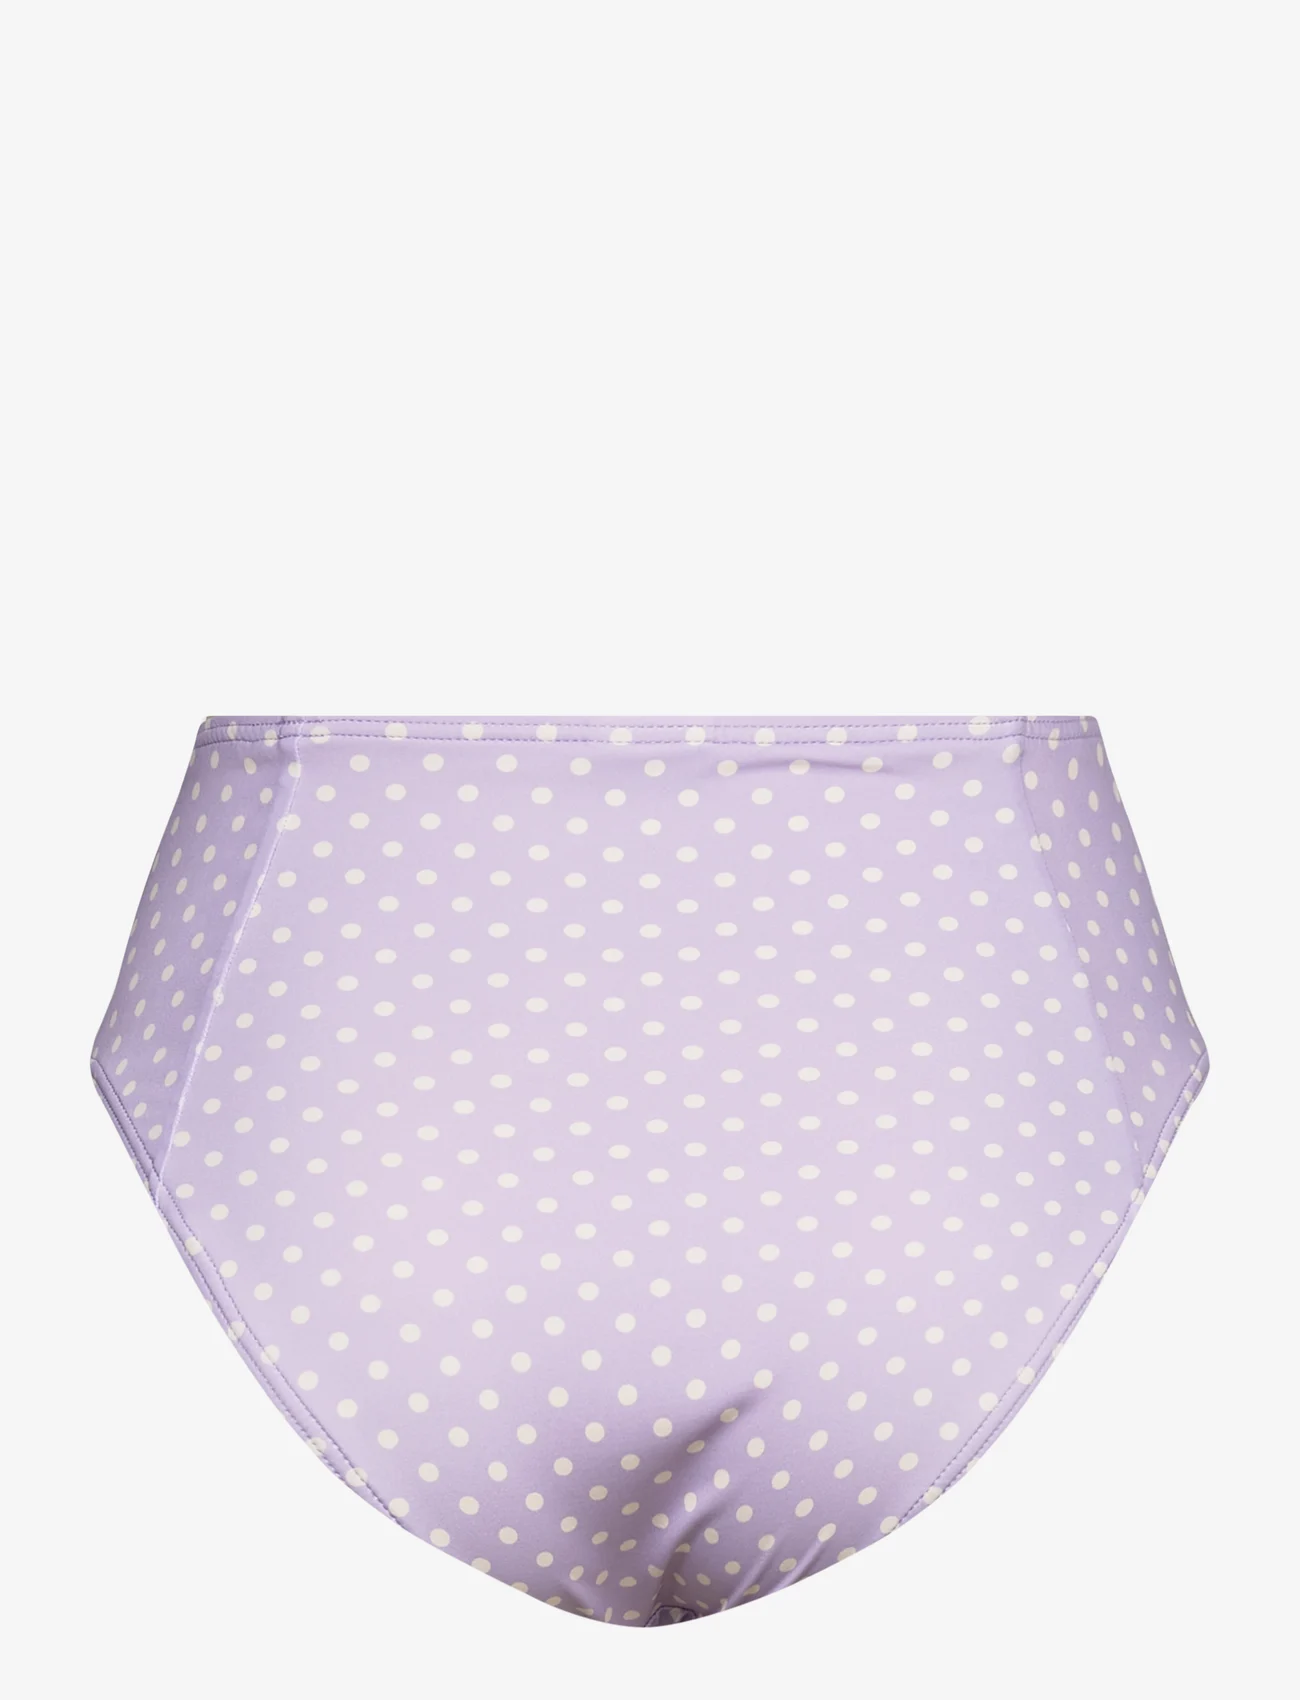 Malina - Denise high-waist bikini bottom - bikinihosen mit hoher taille - polka-dot lavender - 1